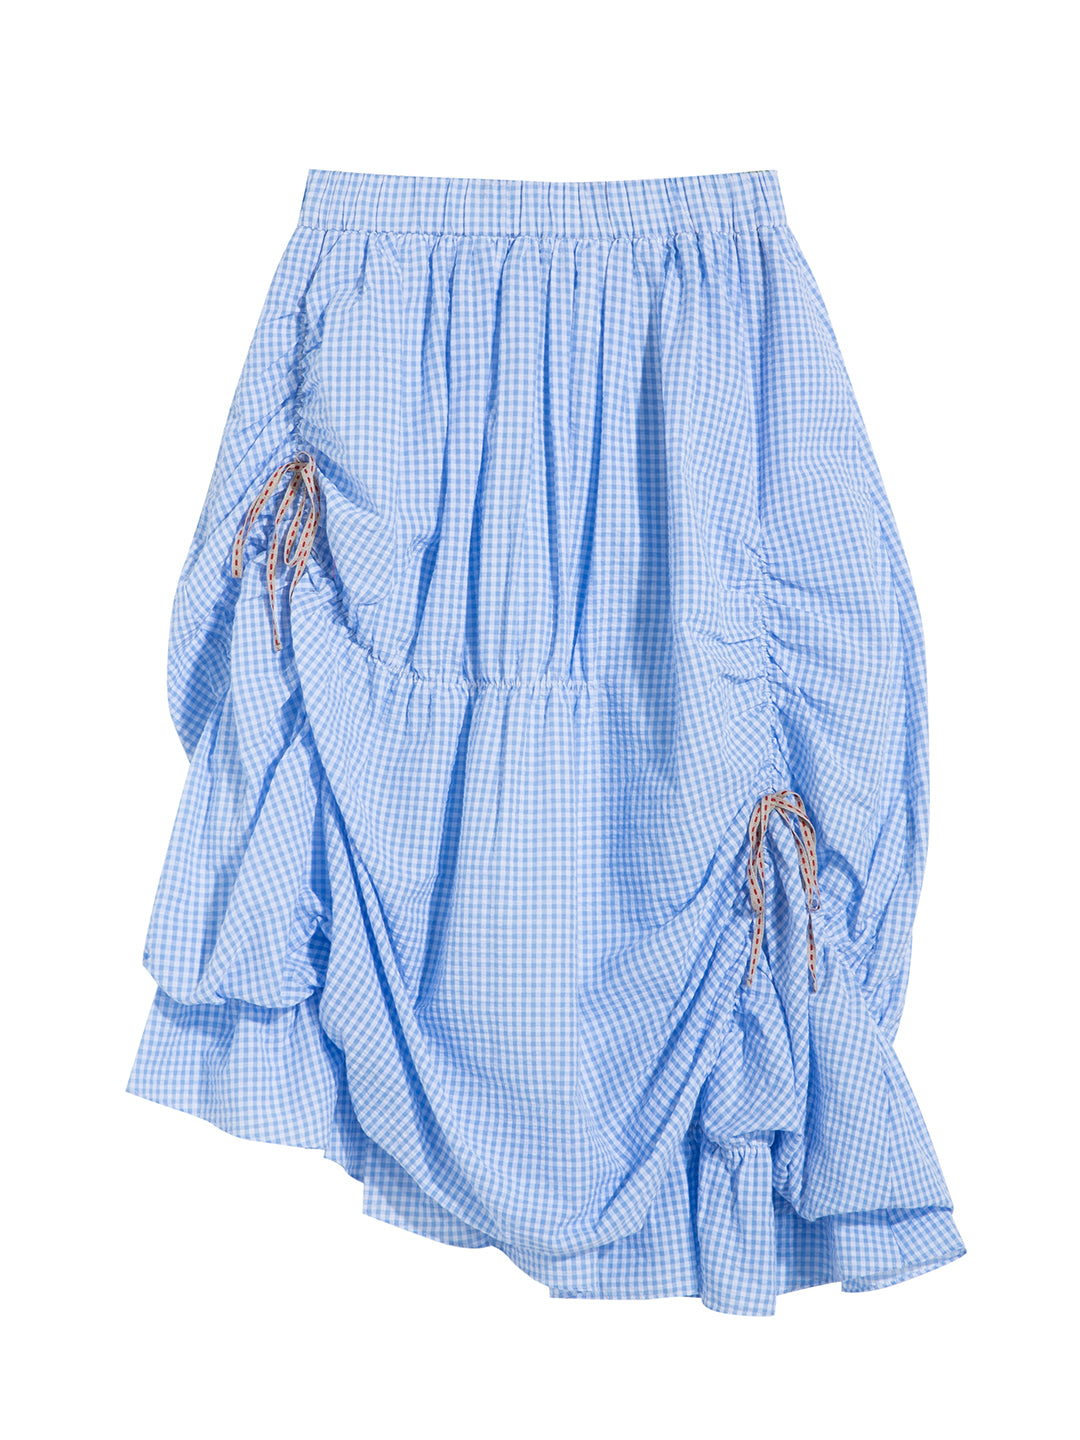 Unlogical Poem Vintage Irregula Pleated Plaid Cotton Skirt-Blue